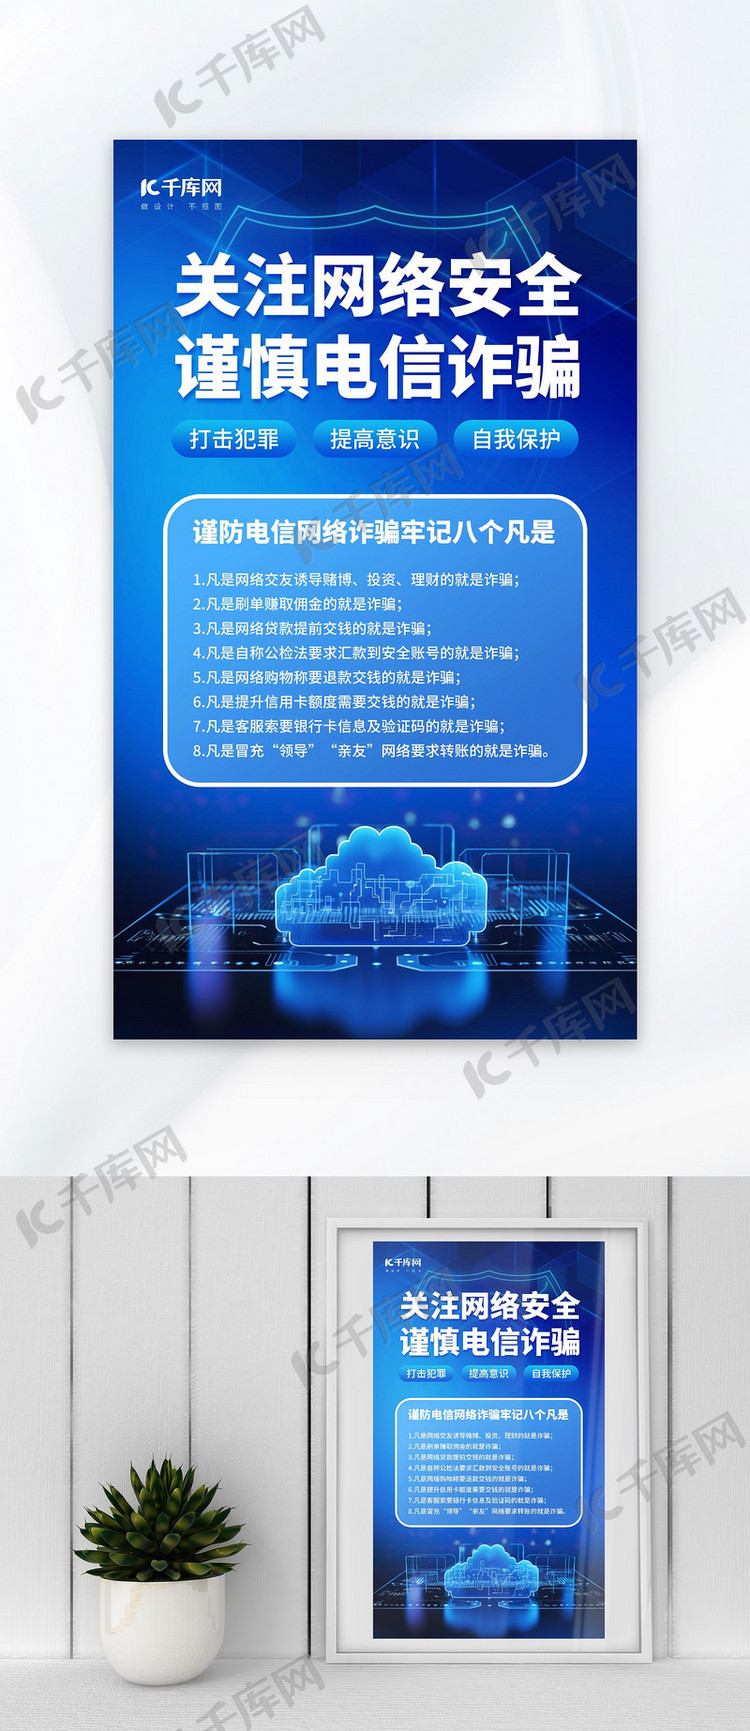 网络安全反诈骗蓝色AIGC模板广告营销海报